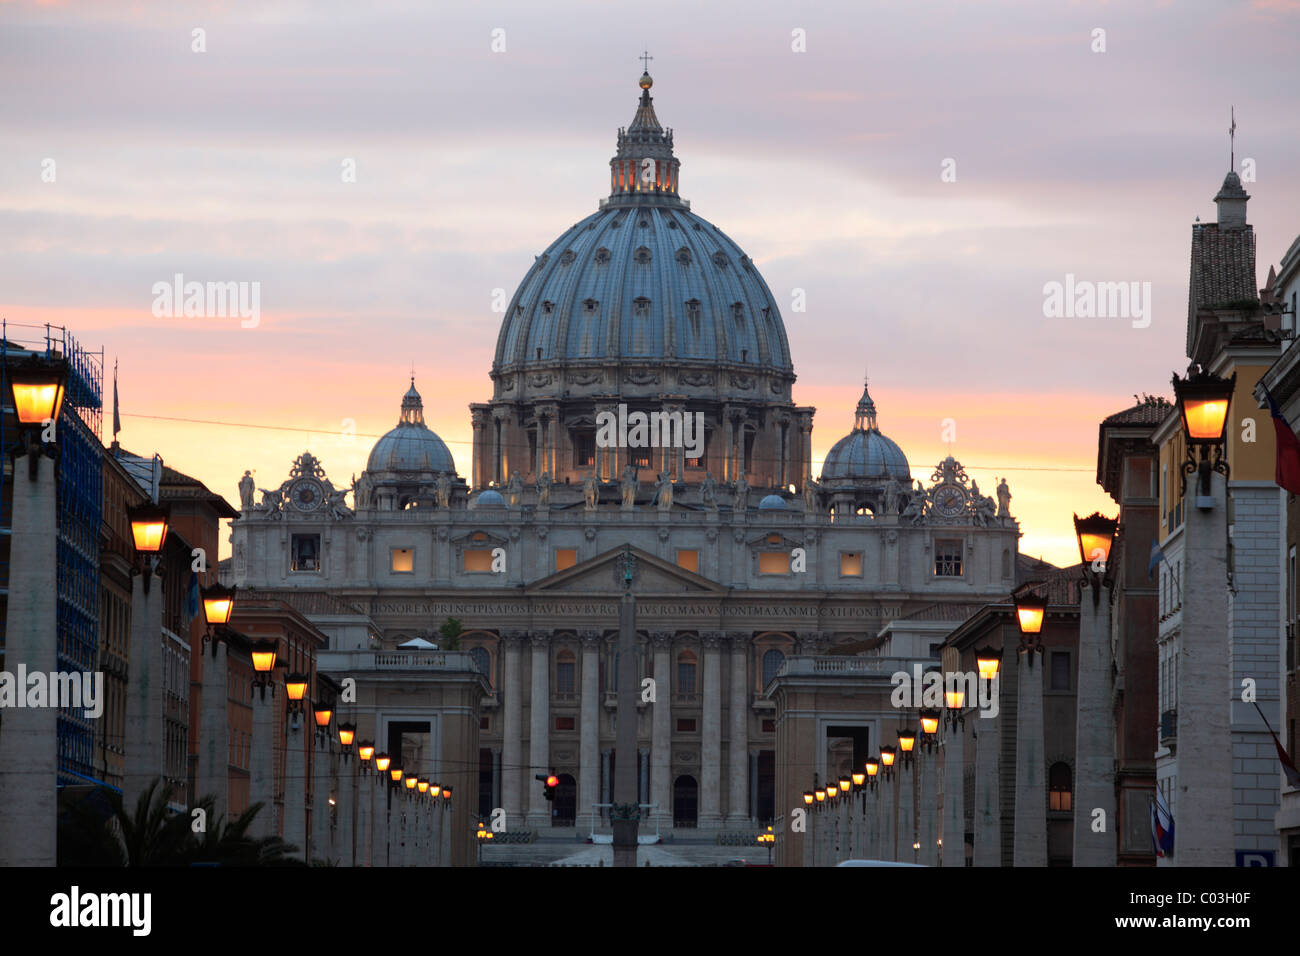 St. Peter's Basilica, Via della Conciliazione, Vatican City, Rome, Italy, Europe Stock Photo